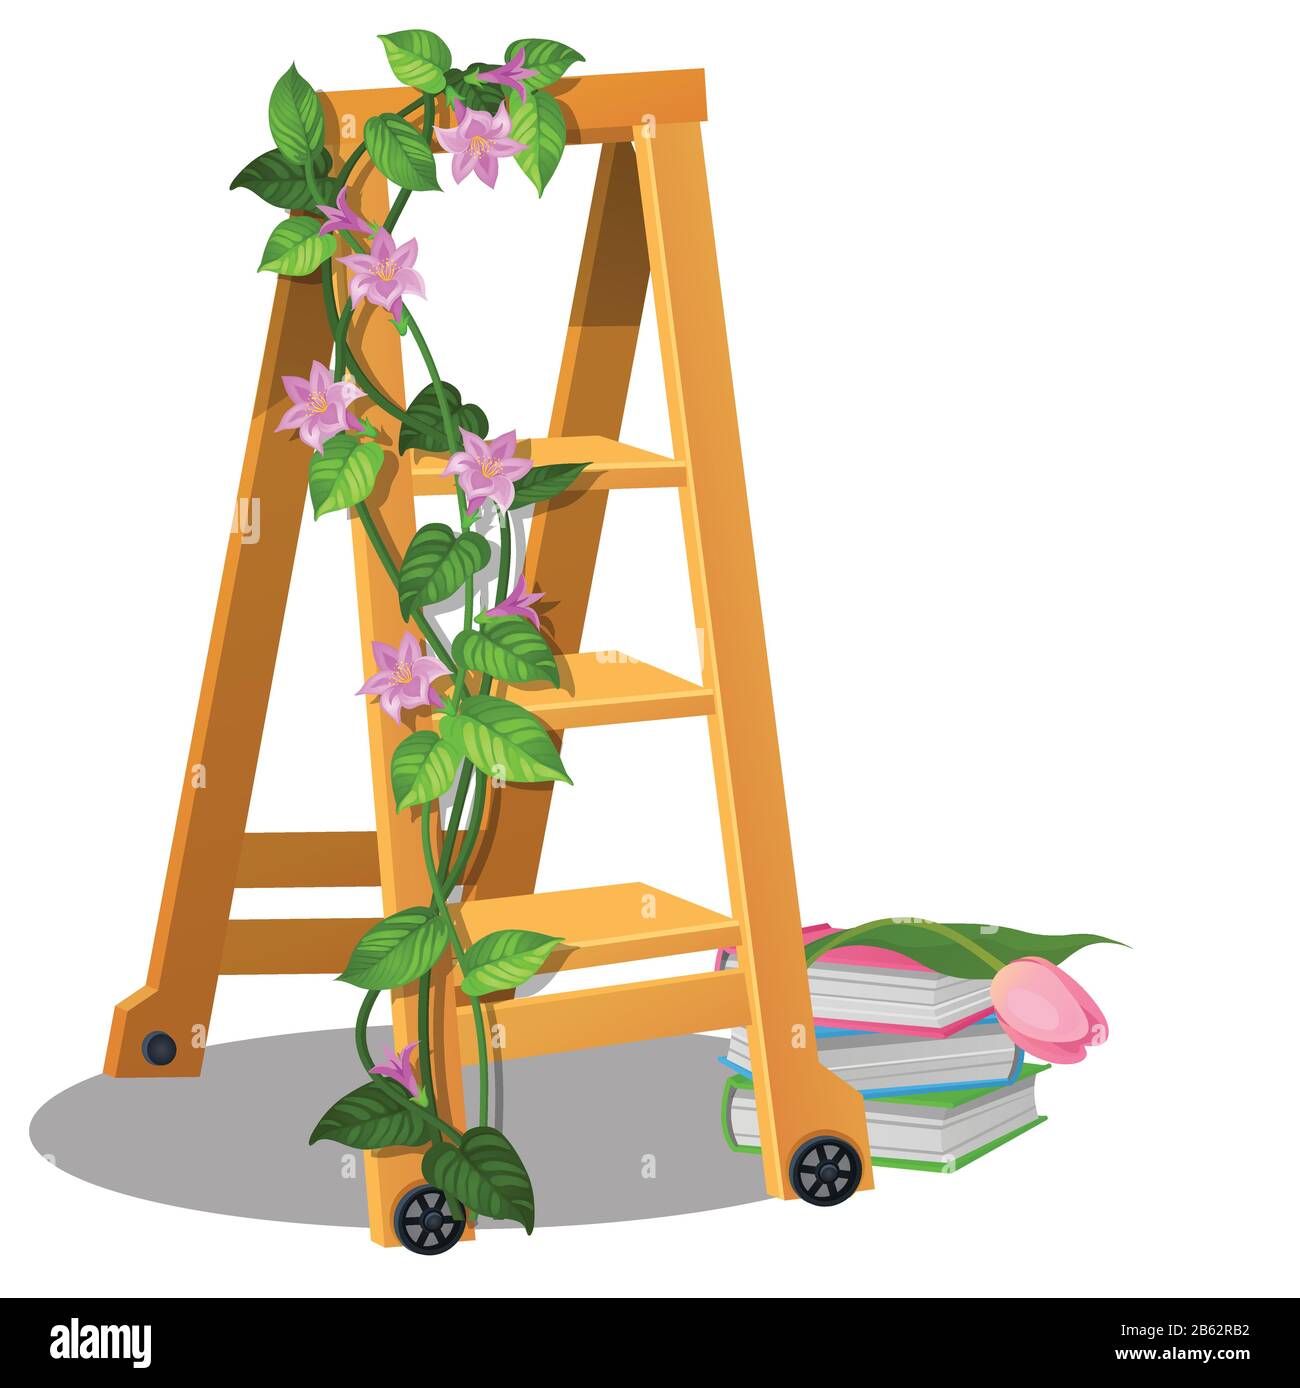 Die mobile Trittleiter aus Holz ist mit Kletterpflanzen mit Blumen und Büchern verziert, die auf weißem Grund isoliert sind. Designelement für den Innenraum. Vektor Stock Vektor